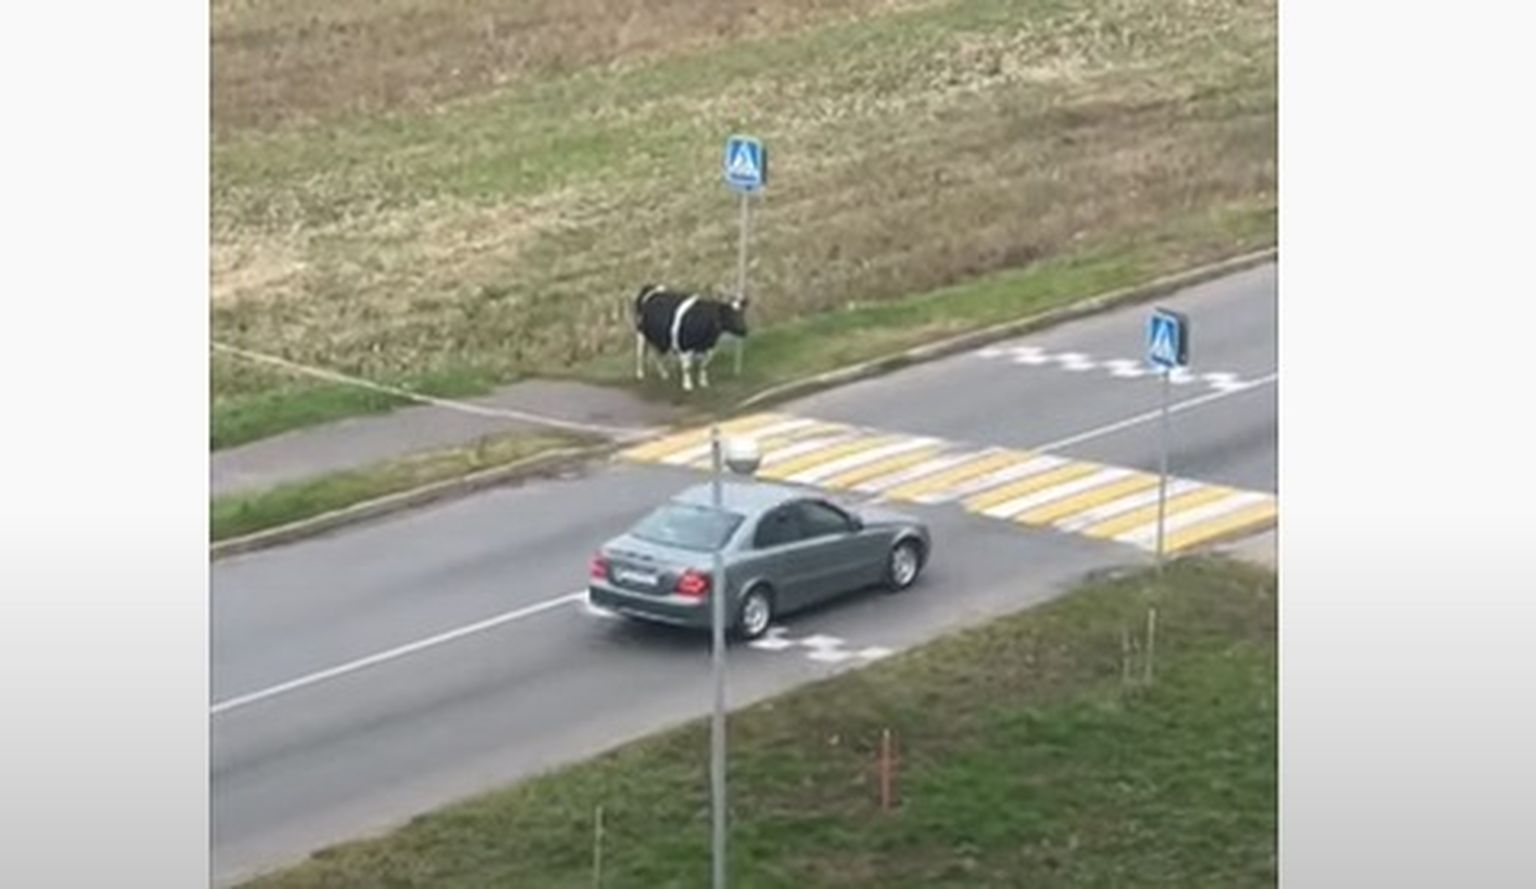 Autod peatuvad, kuid lehm teab, et üksi ei tohi teed ületada